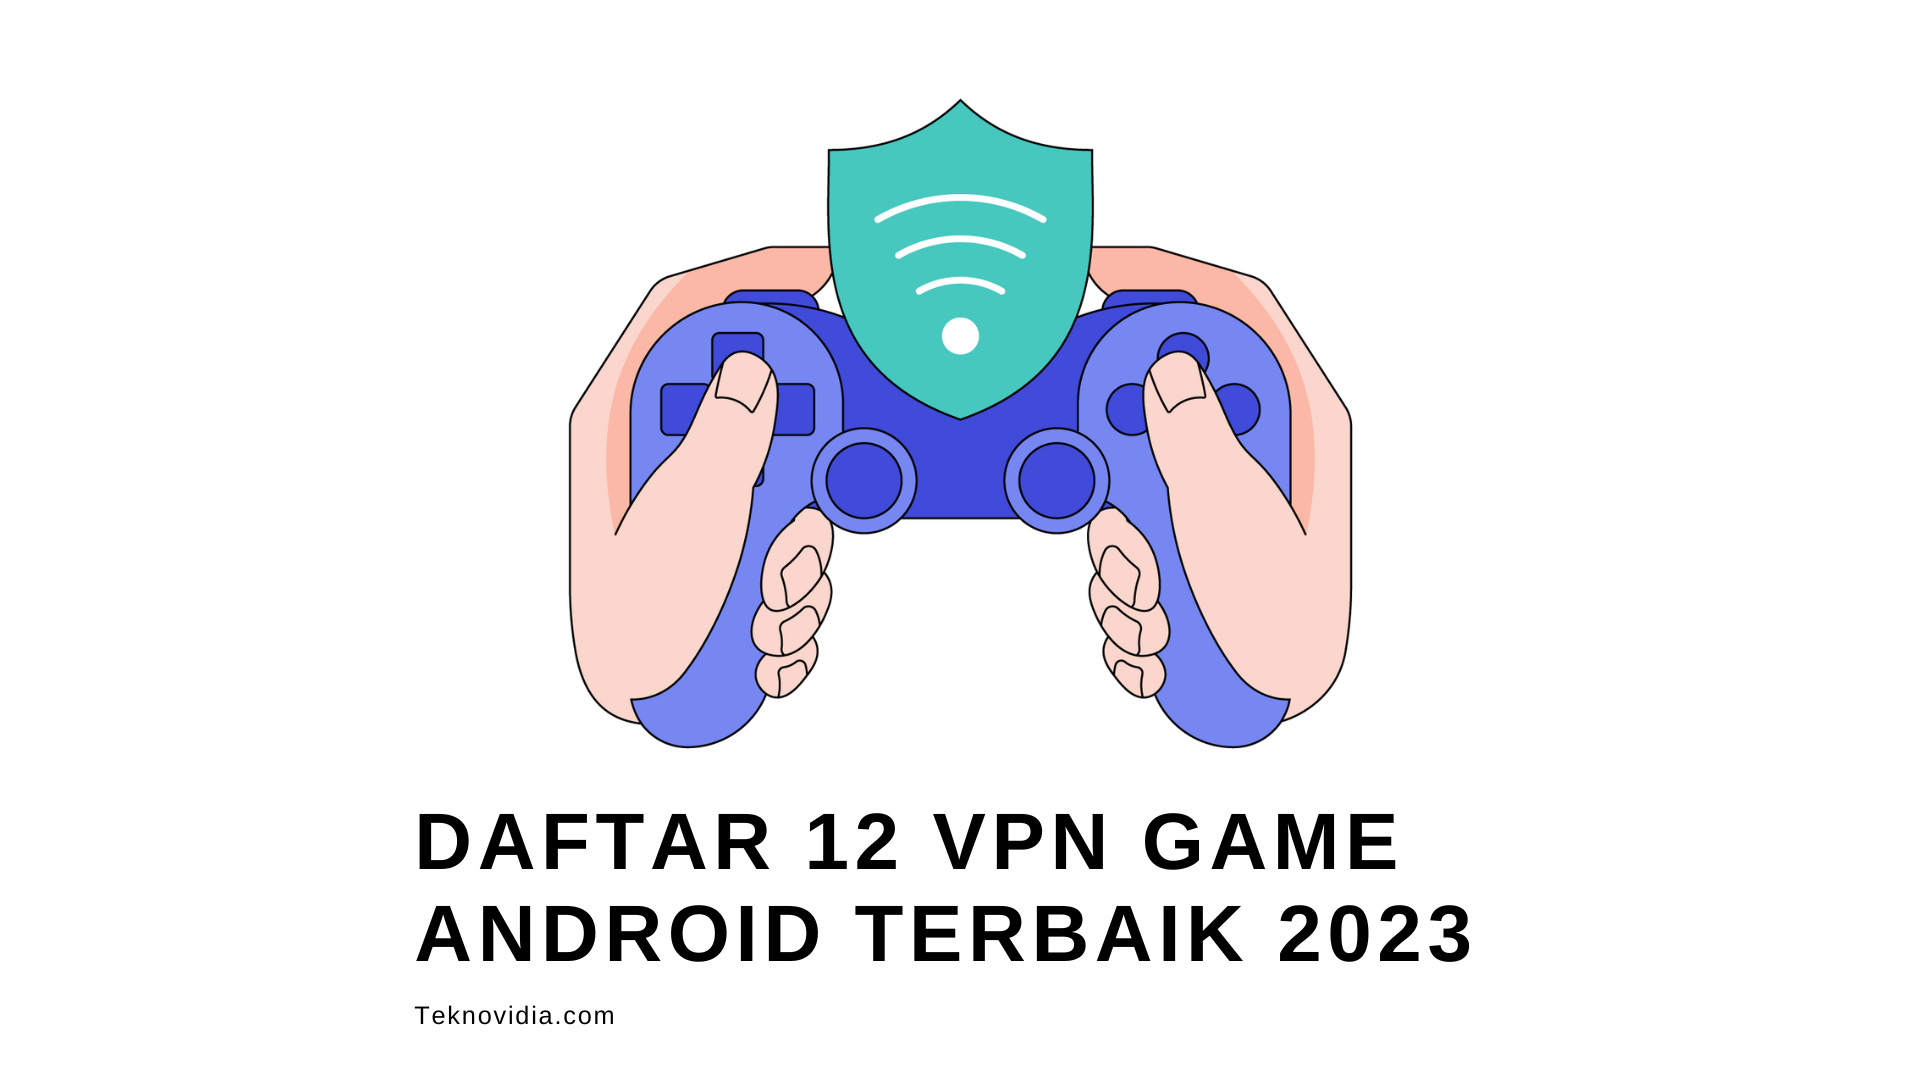 Daftar 12 VPN Game Android Terbaik 2023